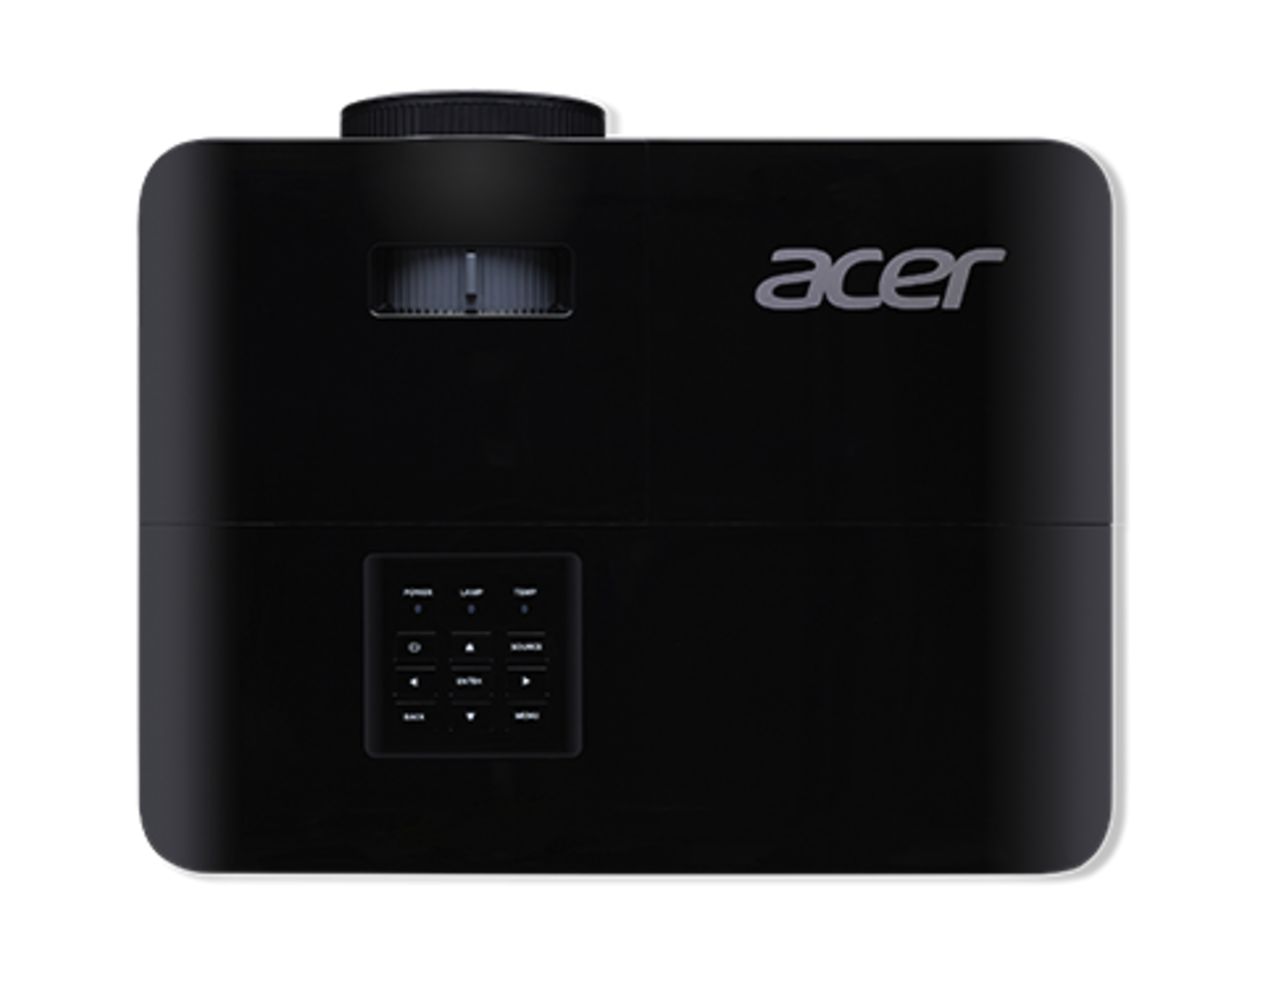 Proiector Acer X1228H, XGA 1024*768, up to WUXGA 1920*1200, 4500 lumeni, DLP 3D ready, 4:3/ 16:9, 20.000:1, dimensiune maxima imagine 300